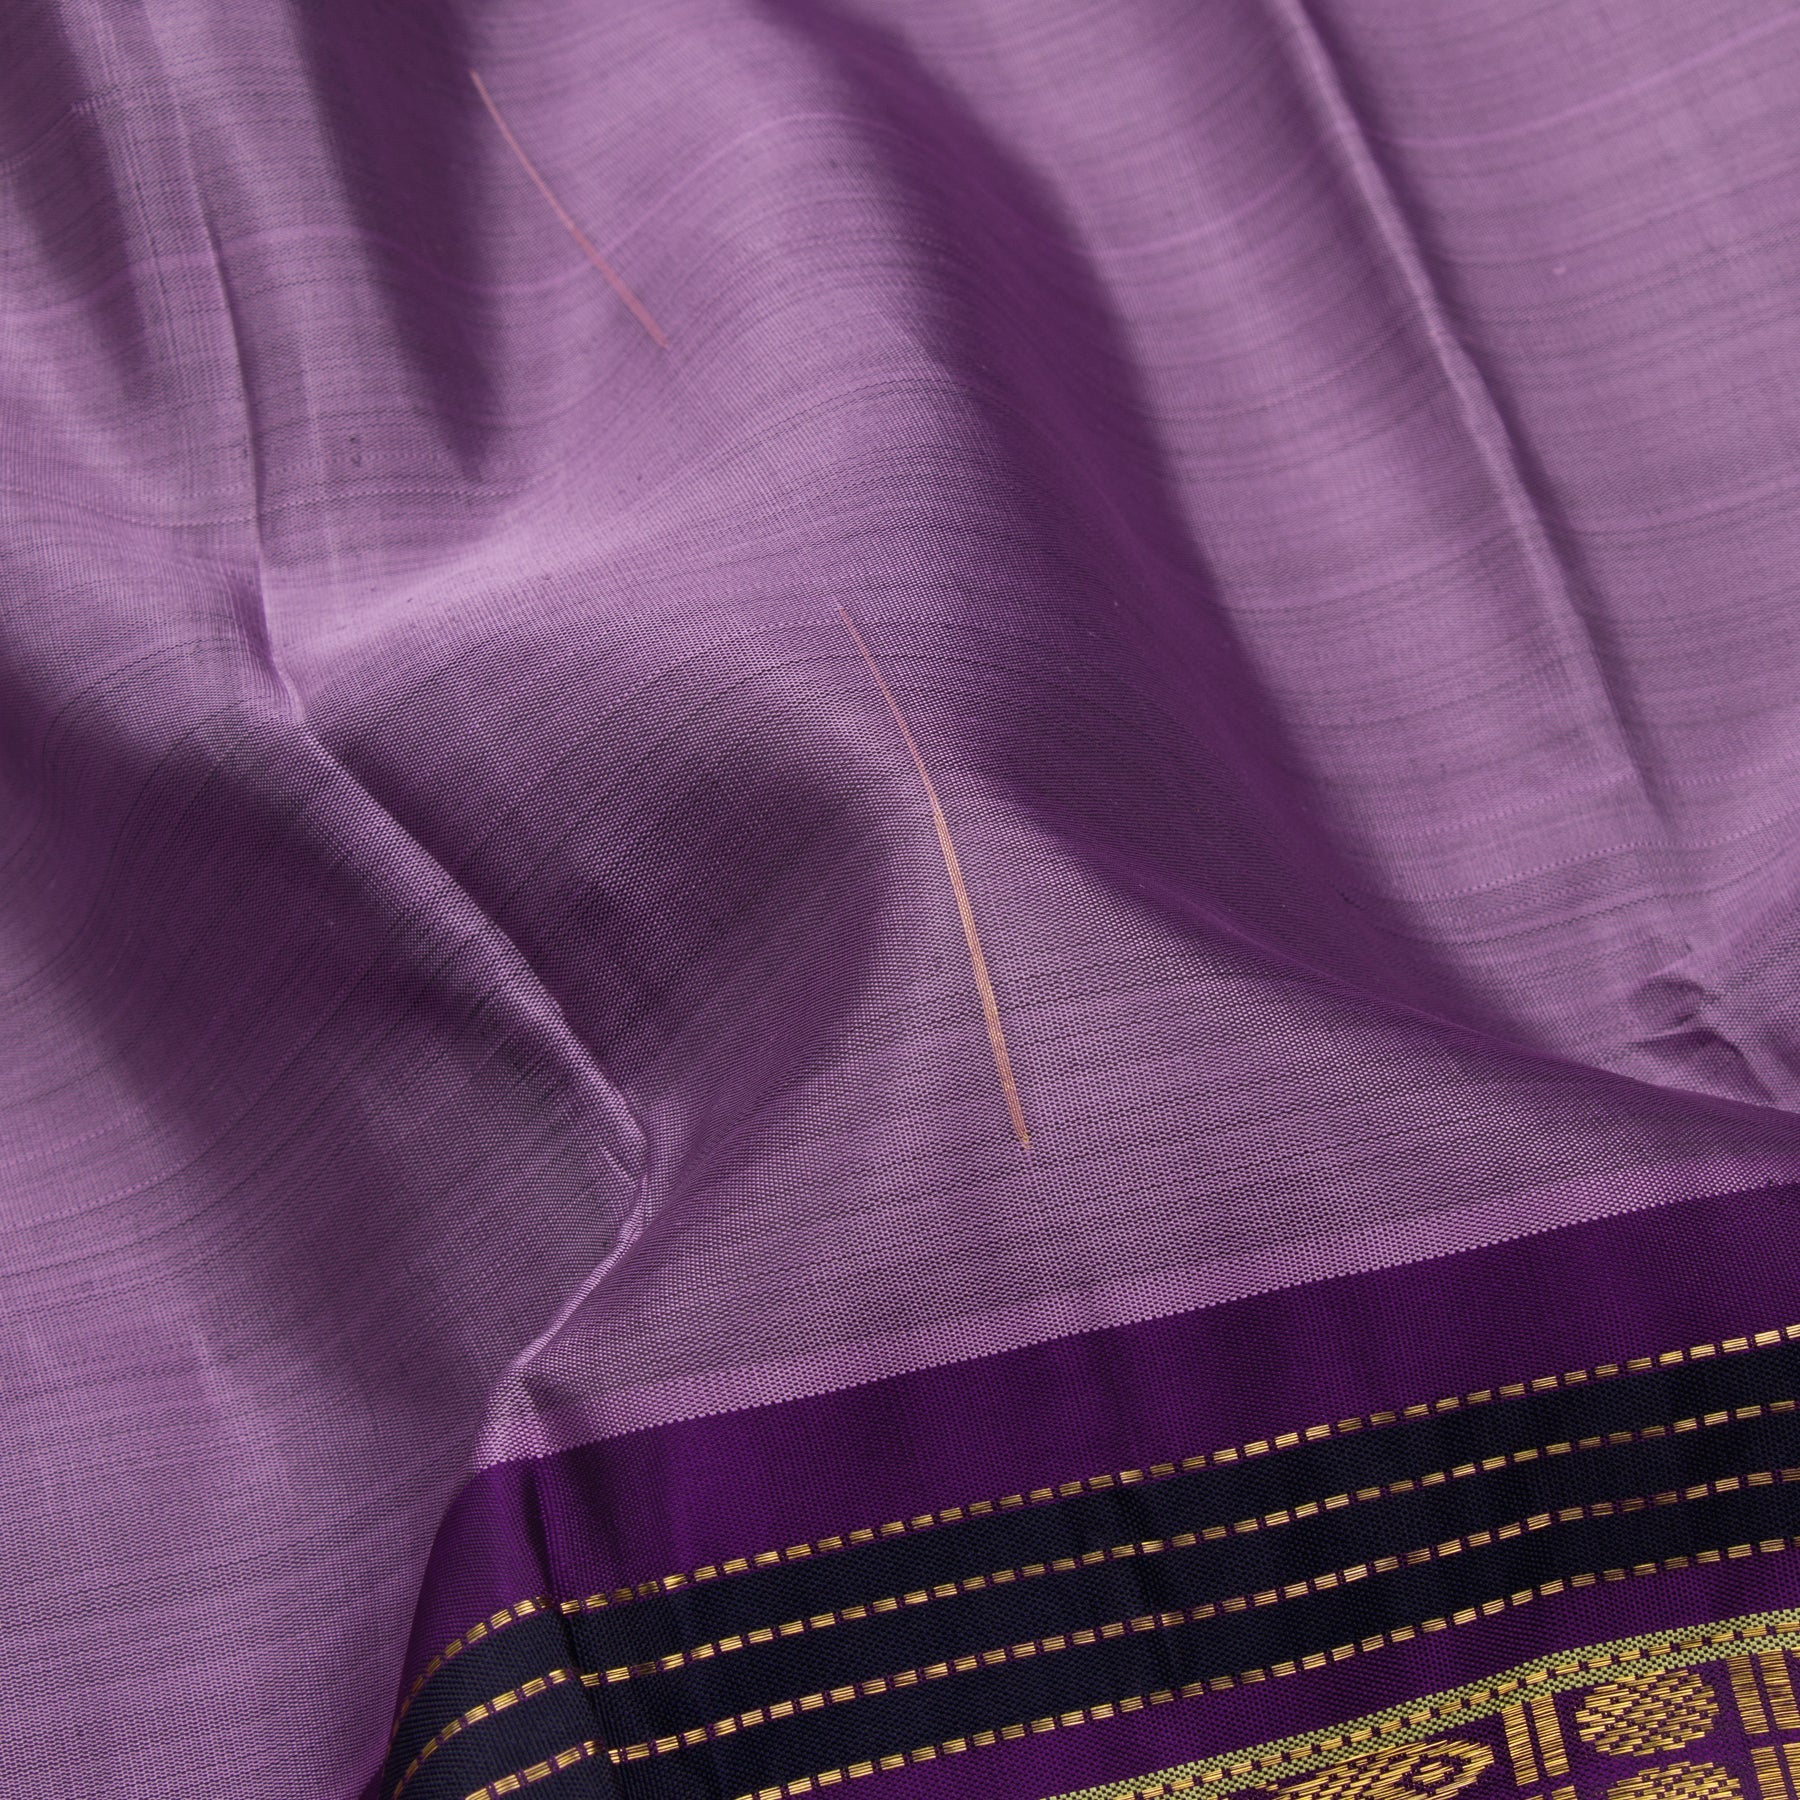 Kanakavalli Kanjivaram Silk Sari 23-040-HS001-10323 - Fabric View